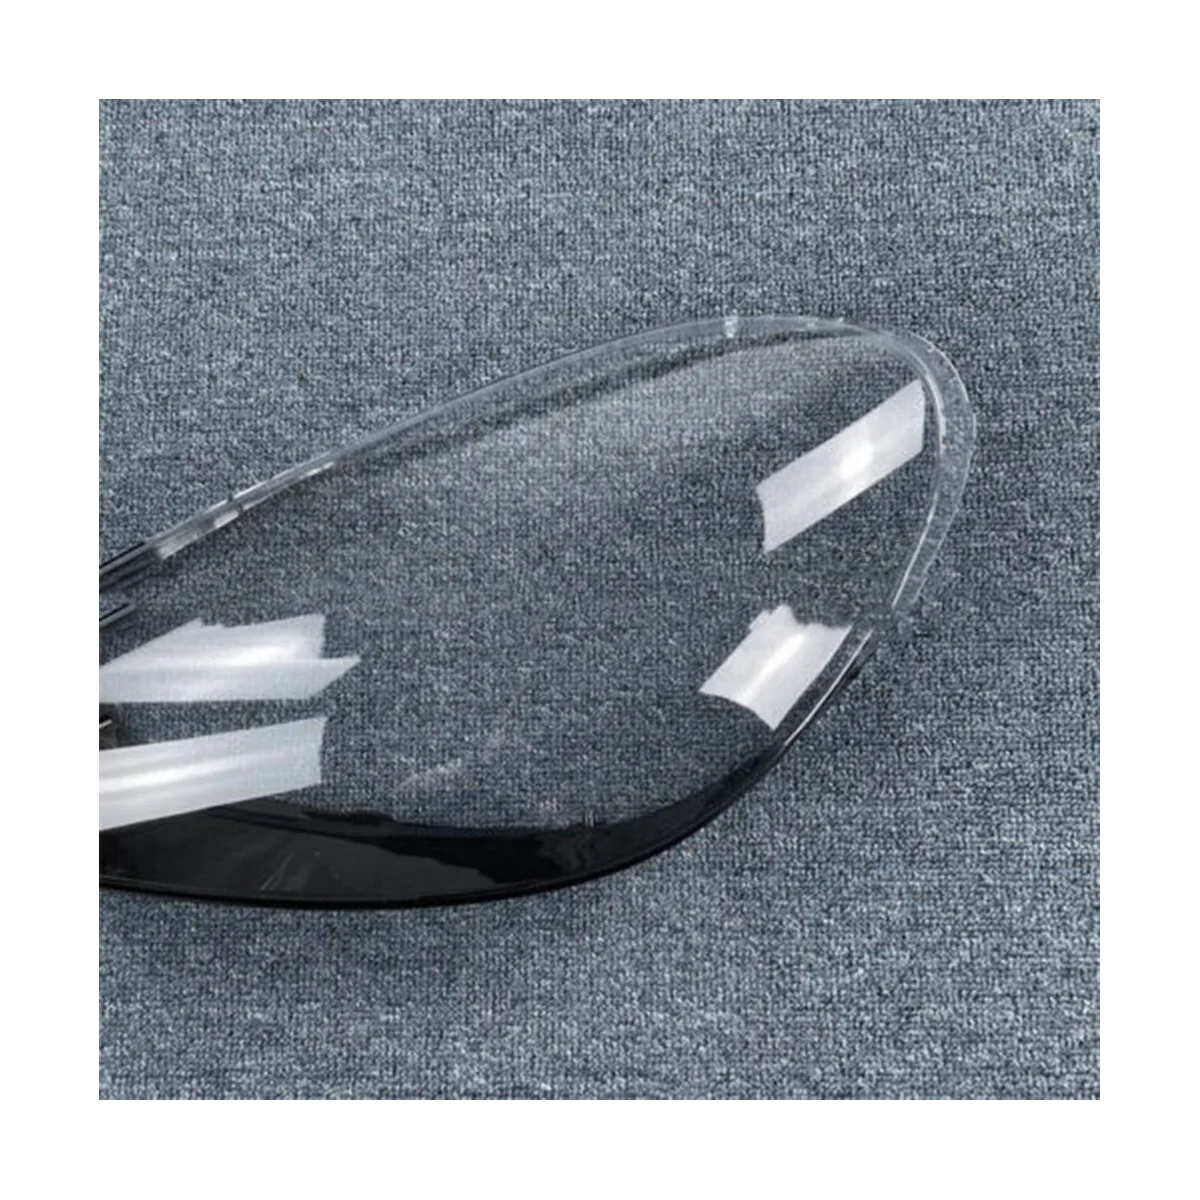 Крышка объектива левой фары автомобиля, Абажур лампы головного света, корпус переднего автоматического фонаря для Porsche Cayenne 2015 2016 2017